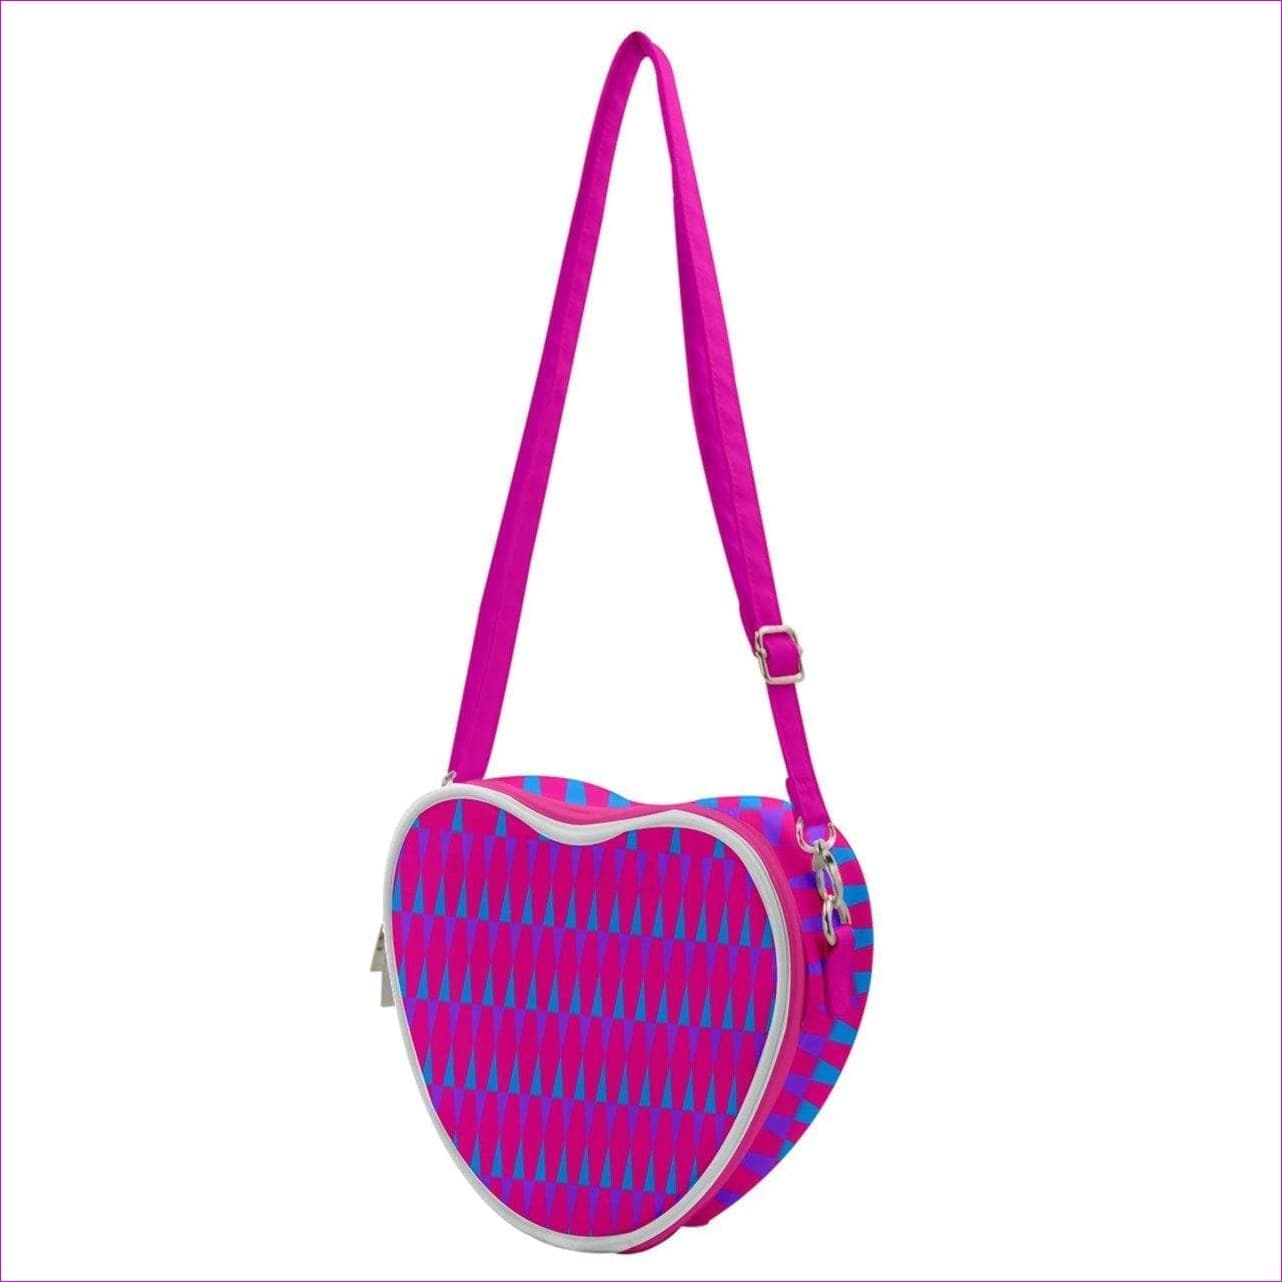 Candy Checkered Heart Shoulder Bag - handbag at TFC&H Co.